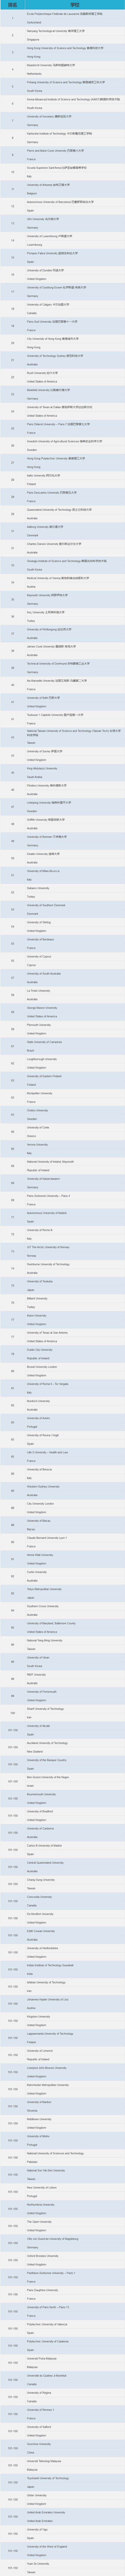 今年《泰晤士高等教育》发布的最年轻大学排名TOP150